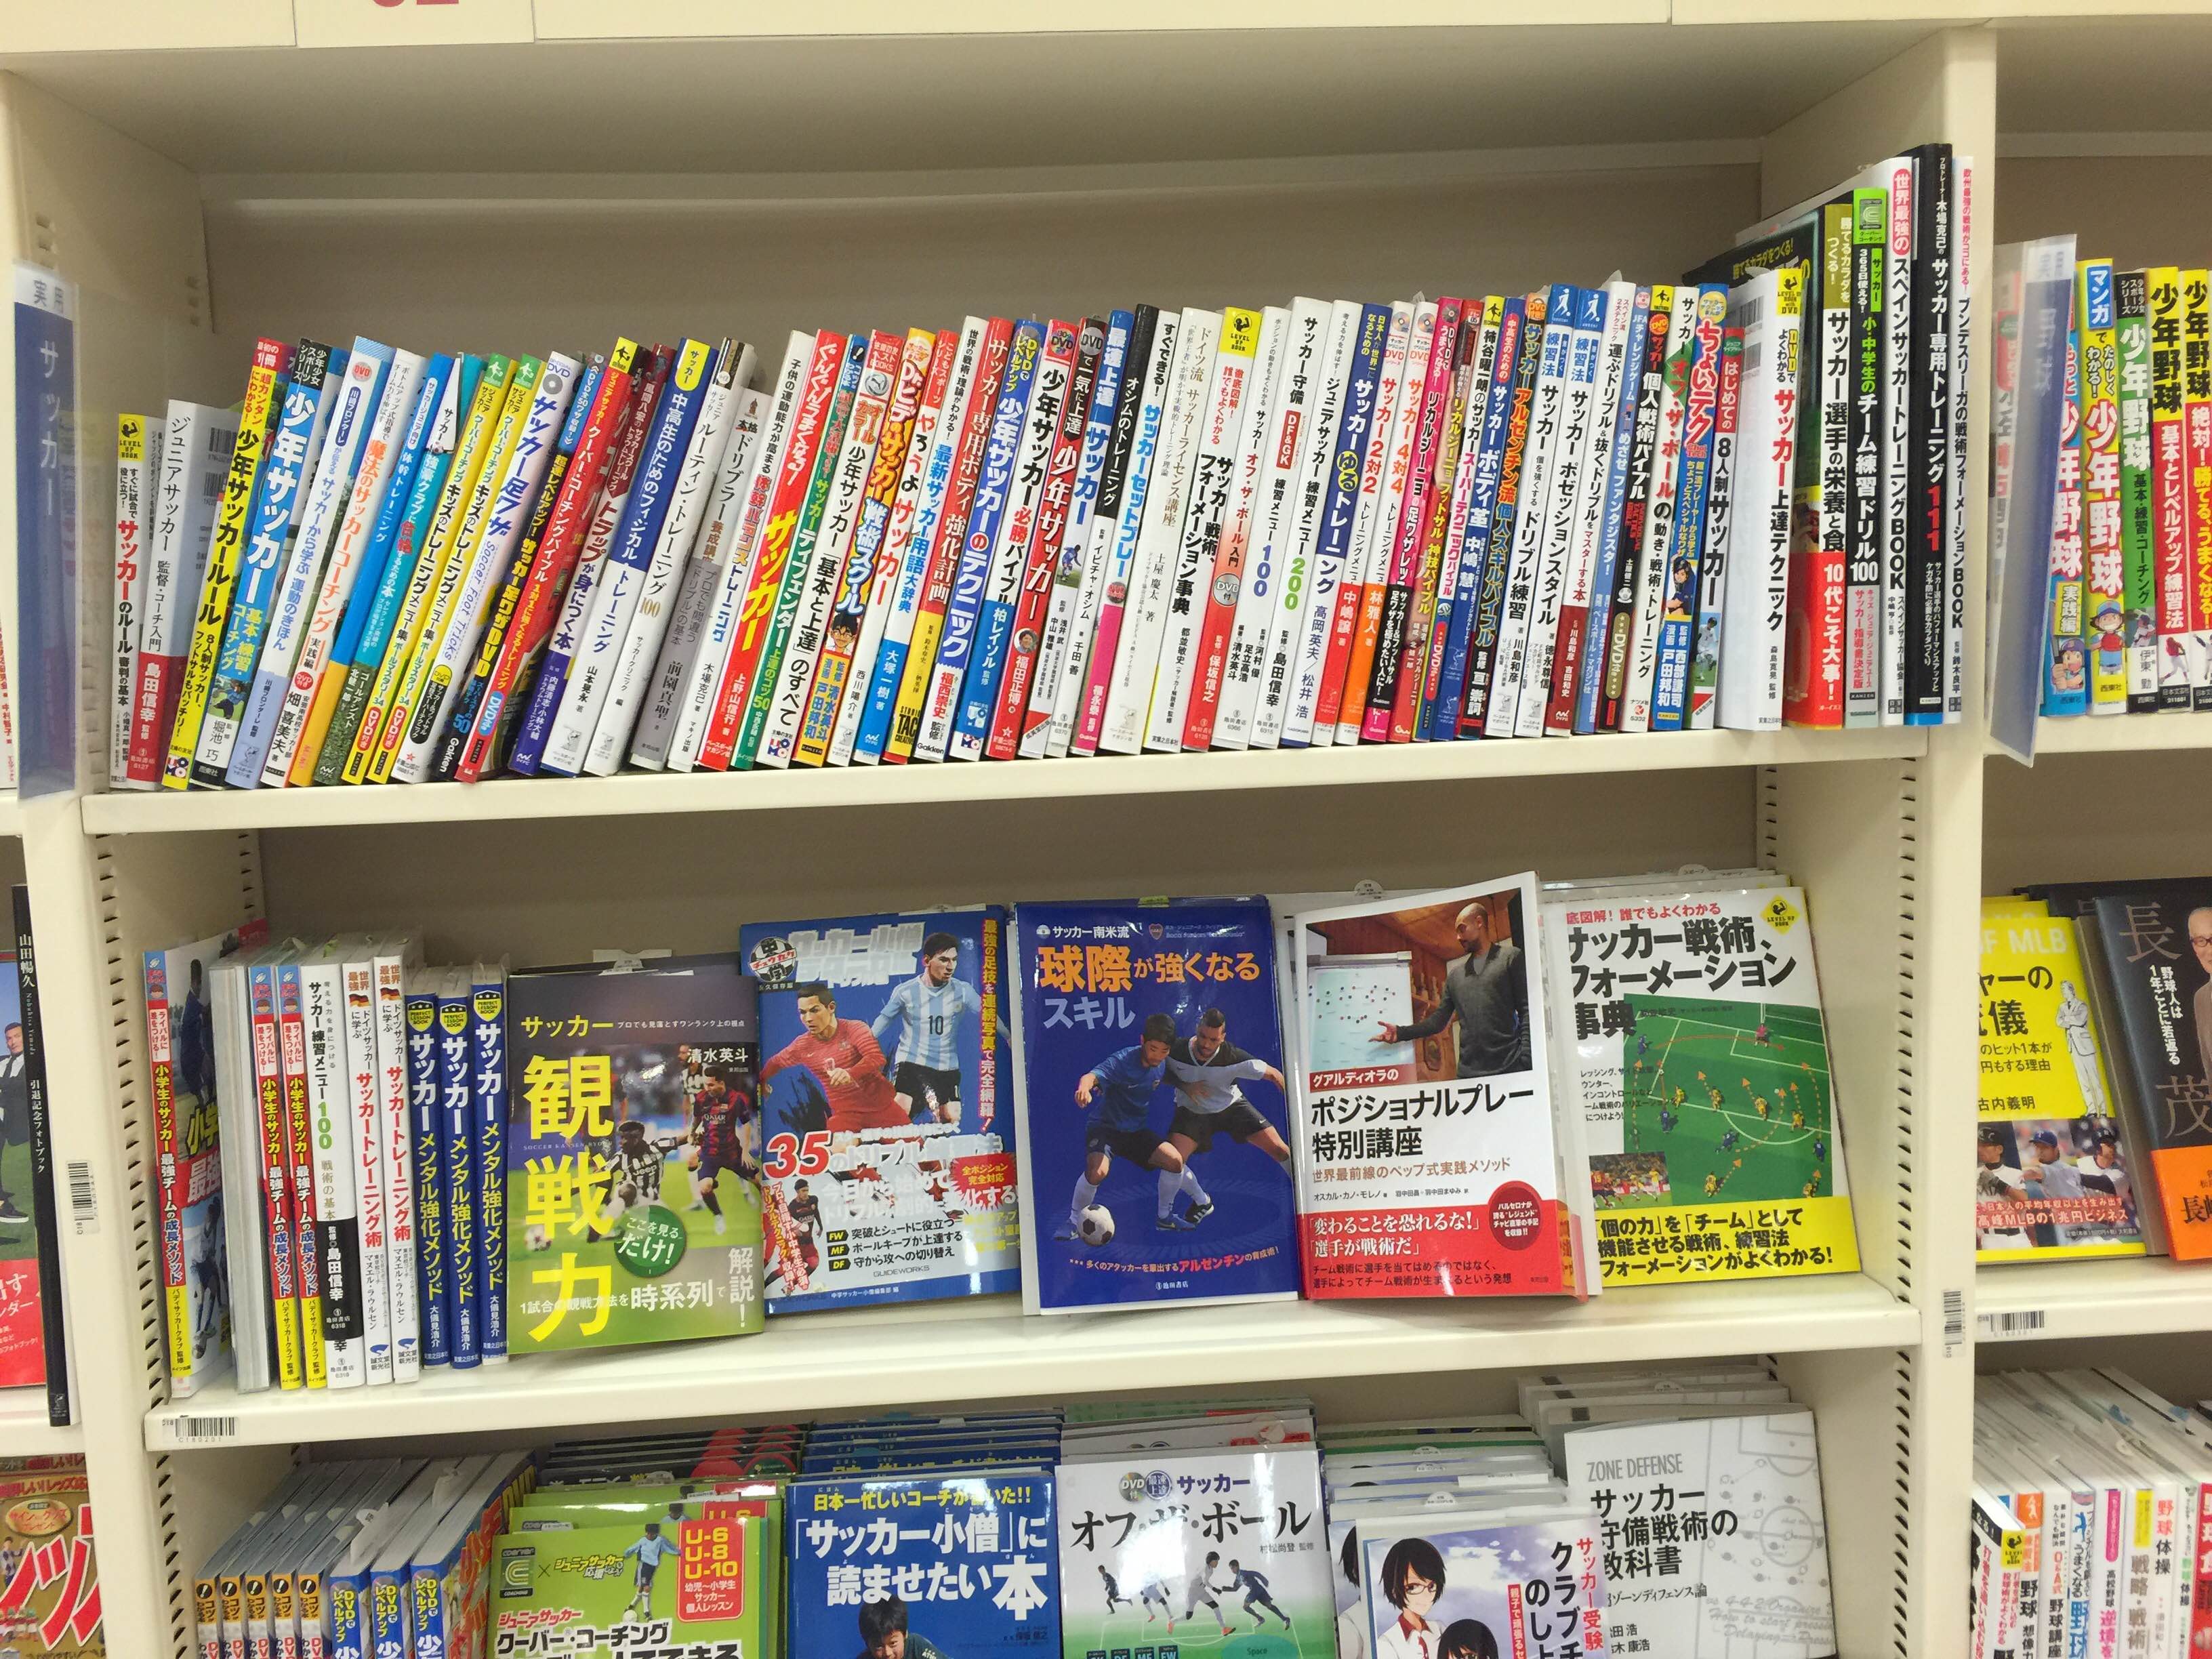 上手くなるためのサッカー書籍の選び方と活かし方とは 公式 個人レッスンの元祖 サッカー家庭教師 谷田部個人レッスン日記ブログ